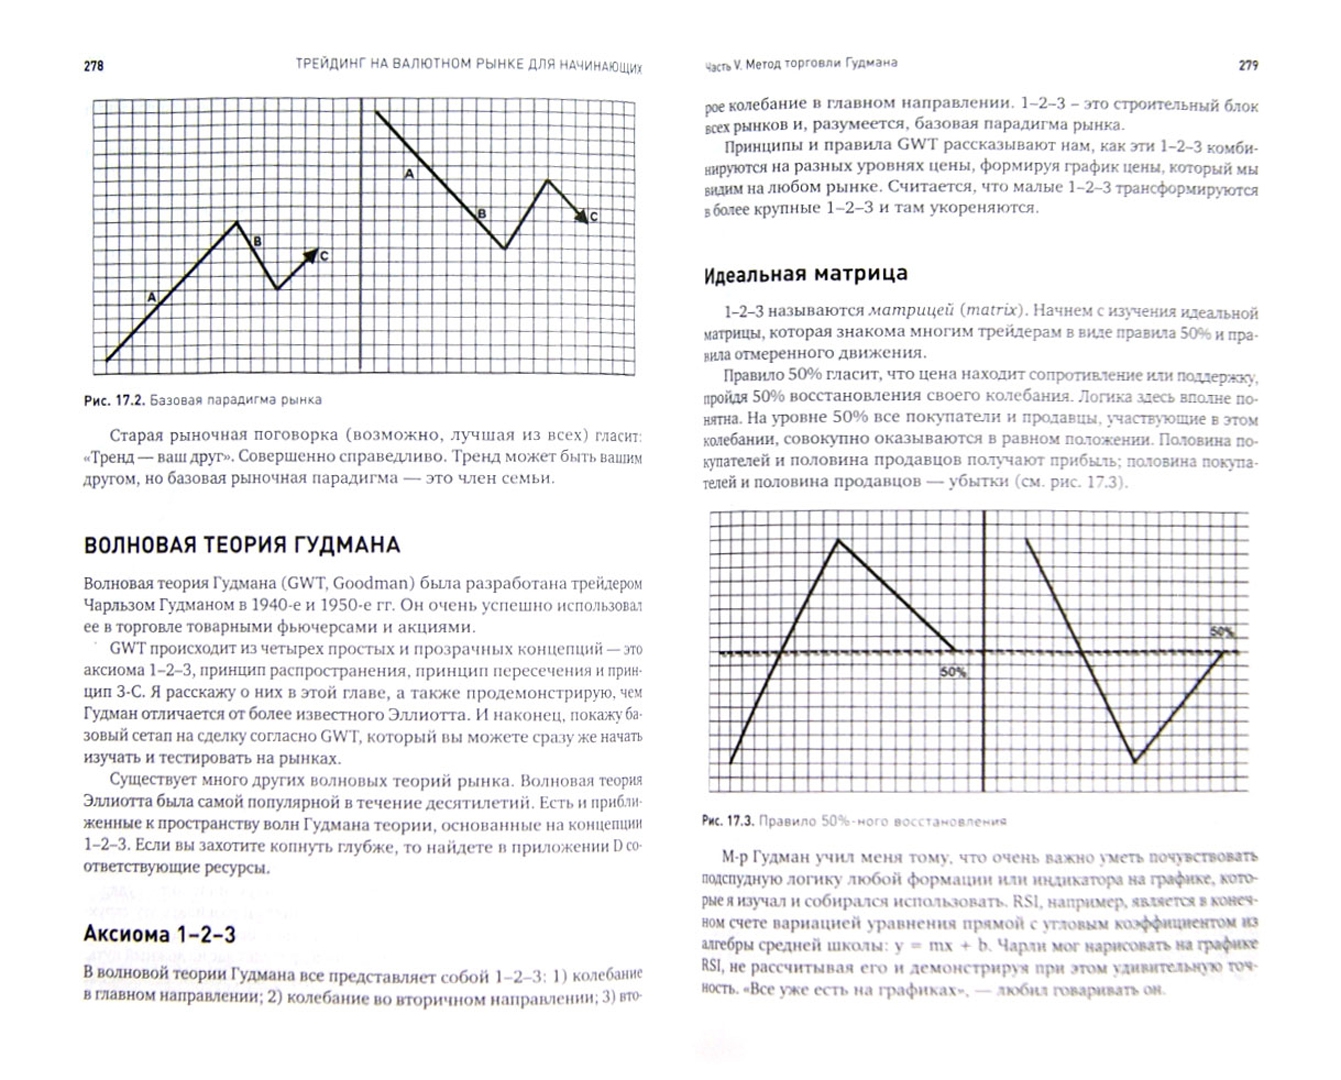 Иллюстрация 1 из 12 для Трейдинг на валютном рынке для начинающих - Майкл Арчер | Лабиринт - книги. Источник: Лабиринт